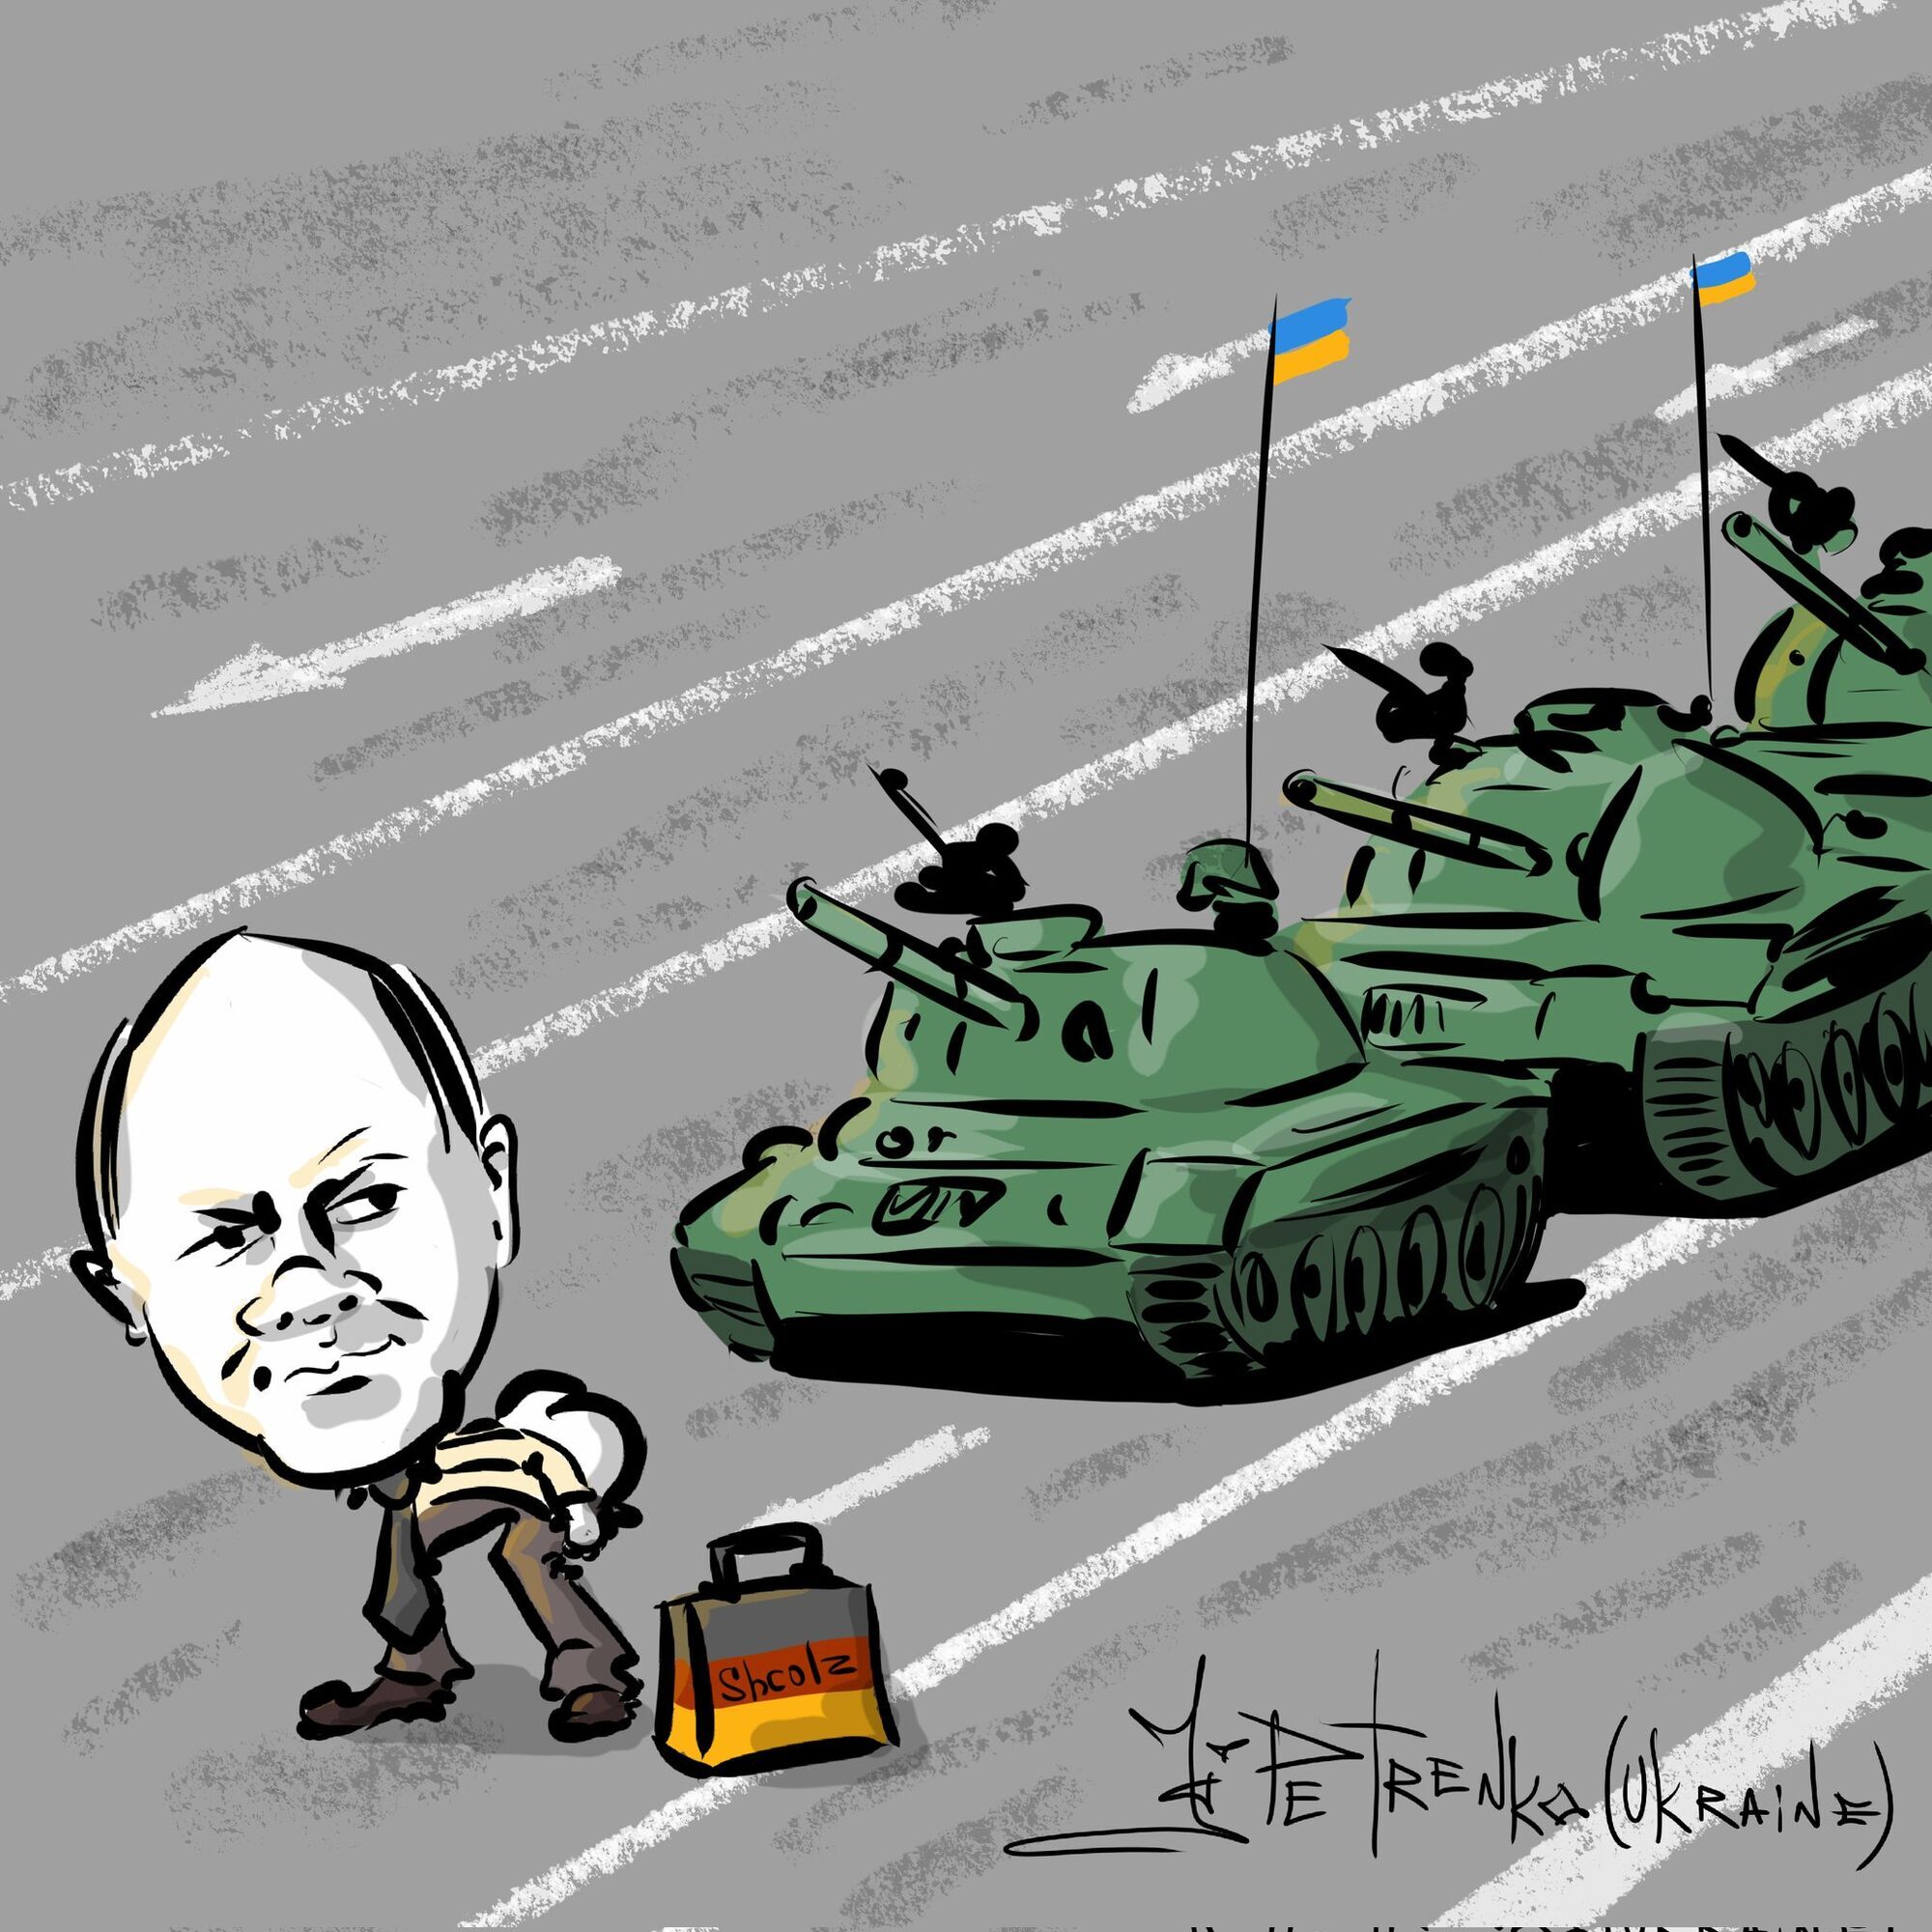 "Просто отправь нас в Украину, чувак": в сети распространяются карикатуры о Шольце и Leopard